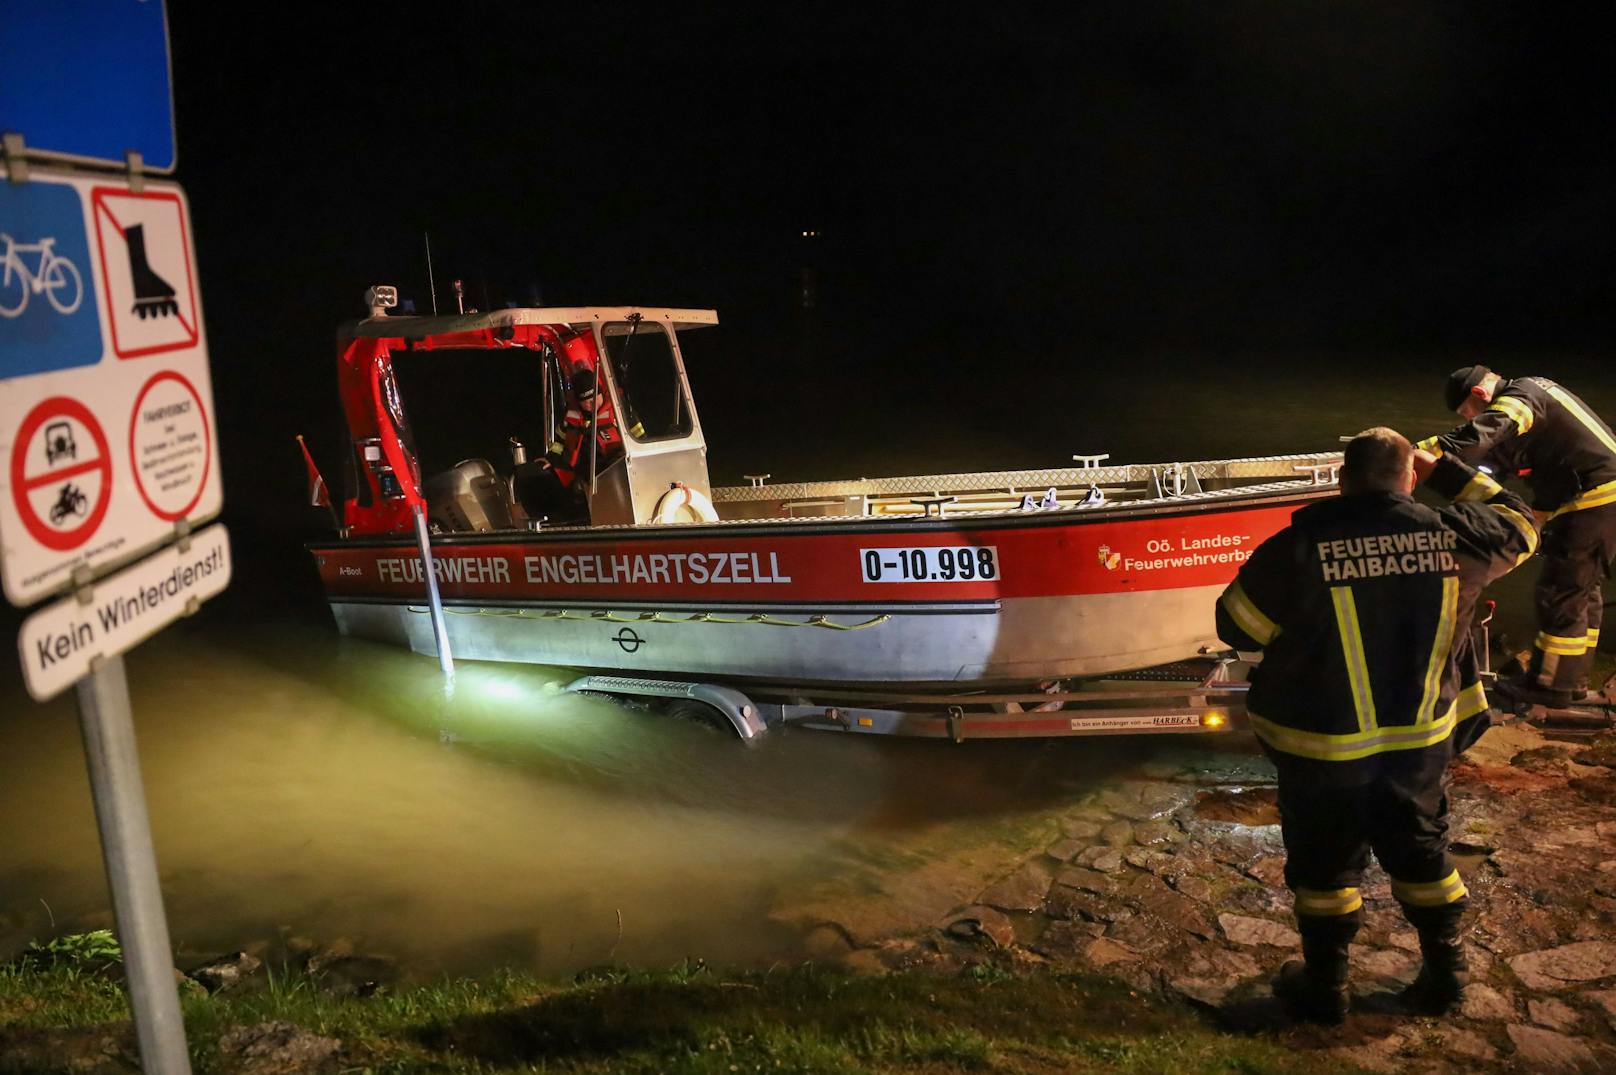 Ein dramatischer Großeinsatz hat sich in der Nacht auf Montag im Bereich der Schlögener Schlinge abgespielt, nachdem ein Schiffspassagier in die Donau gestürzt ist.